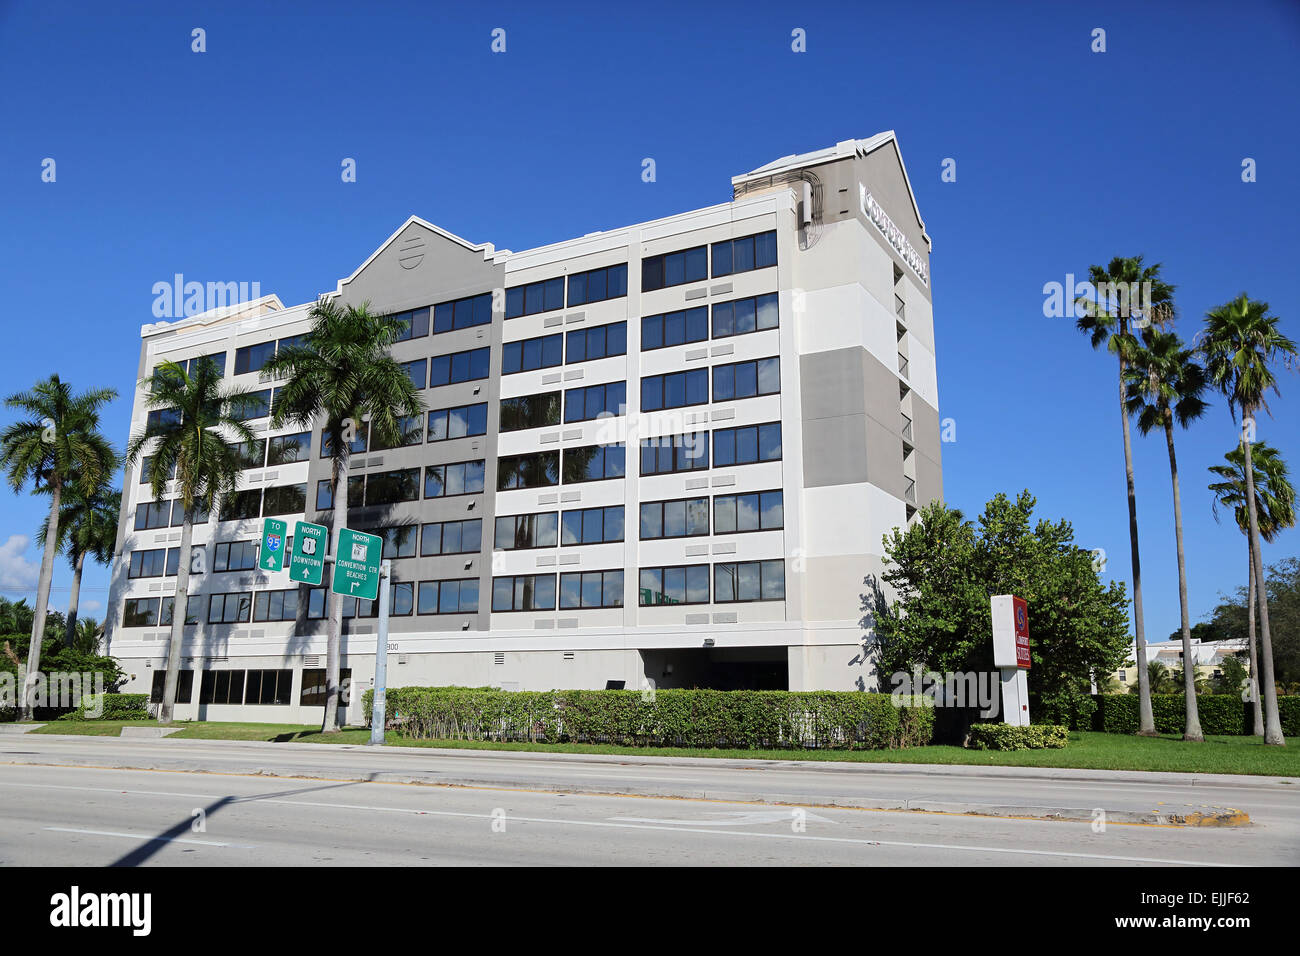 L'extérieur de l'hôtel Comfort Suites, Fort Lauderdale, Florida, USA Banque D'Images